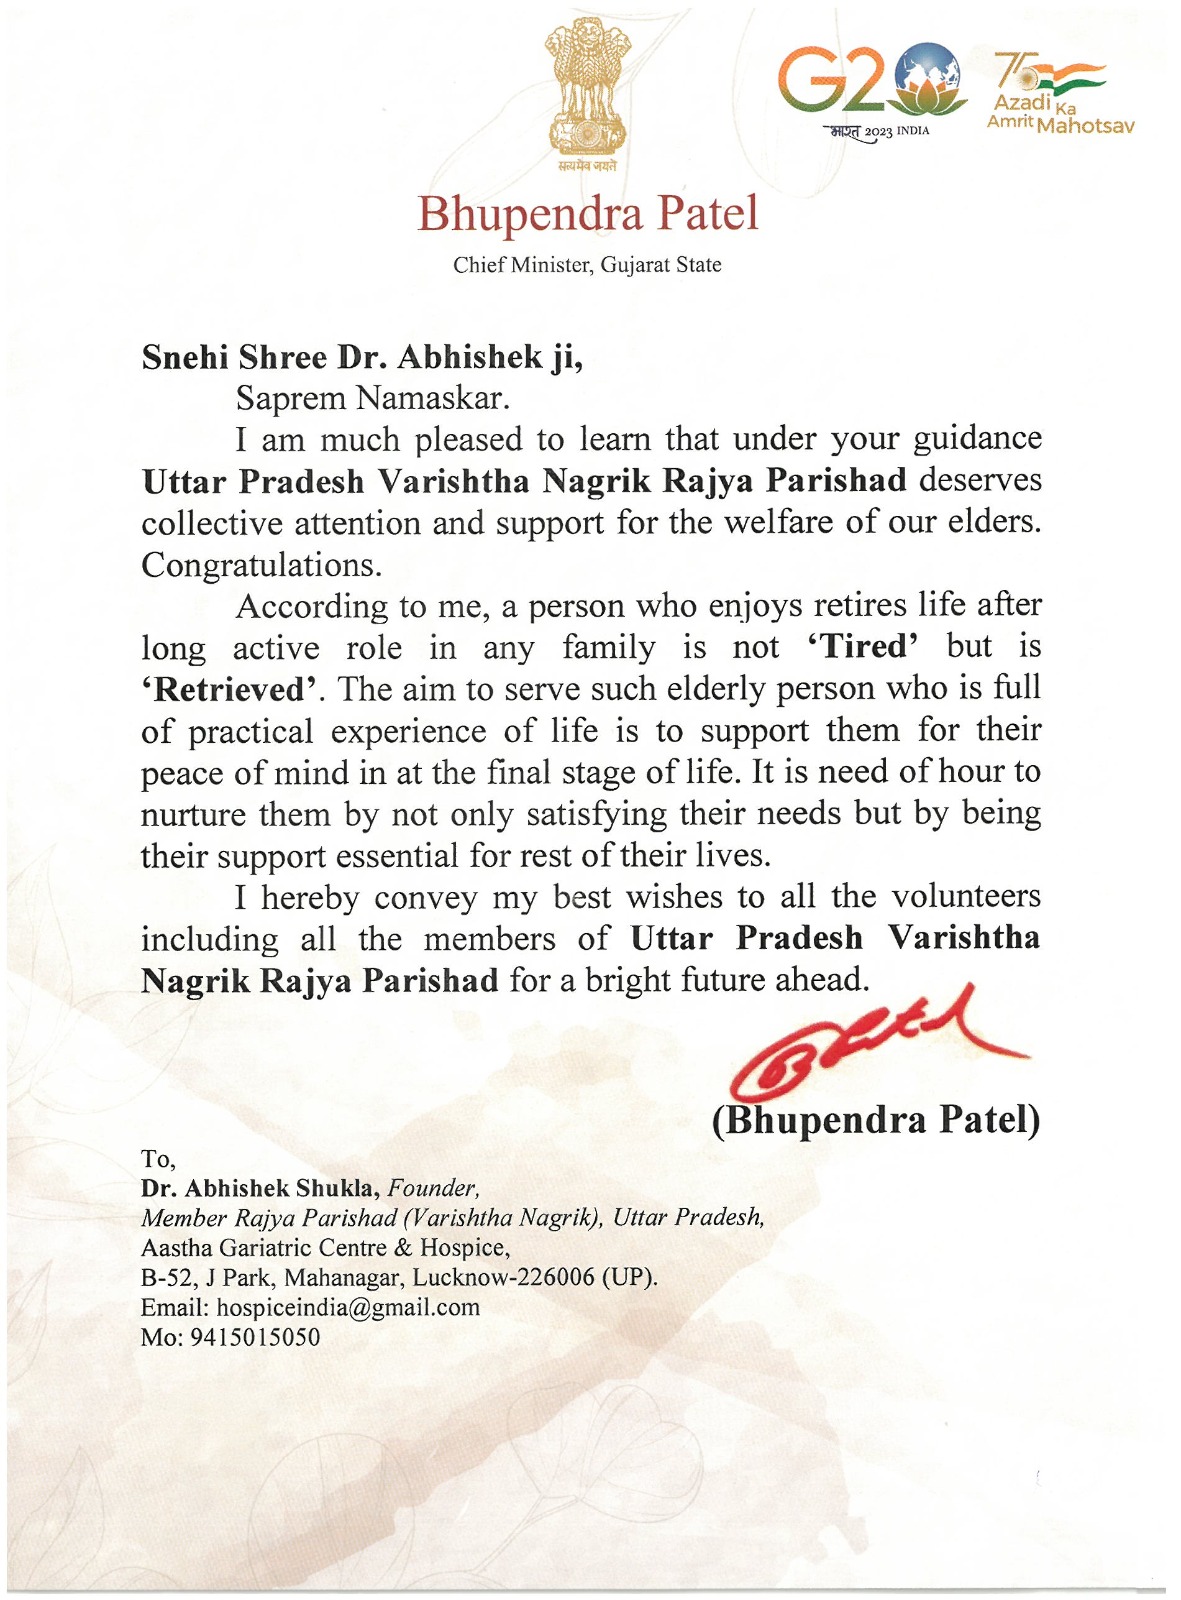 Appreciation Letter by Bhupendra Patel CM Gujarat